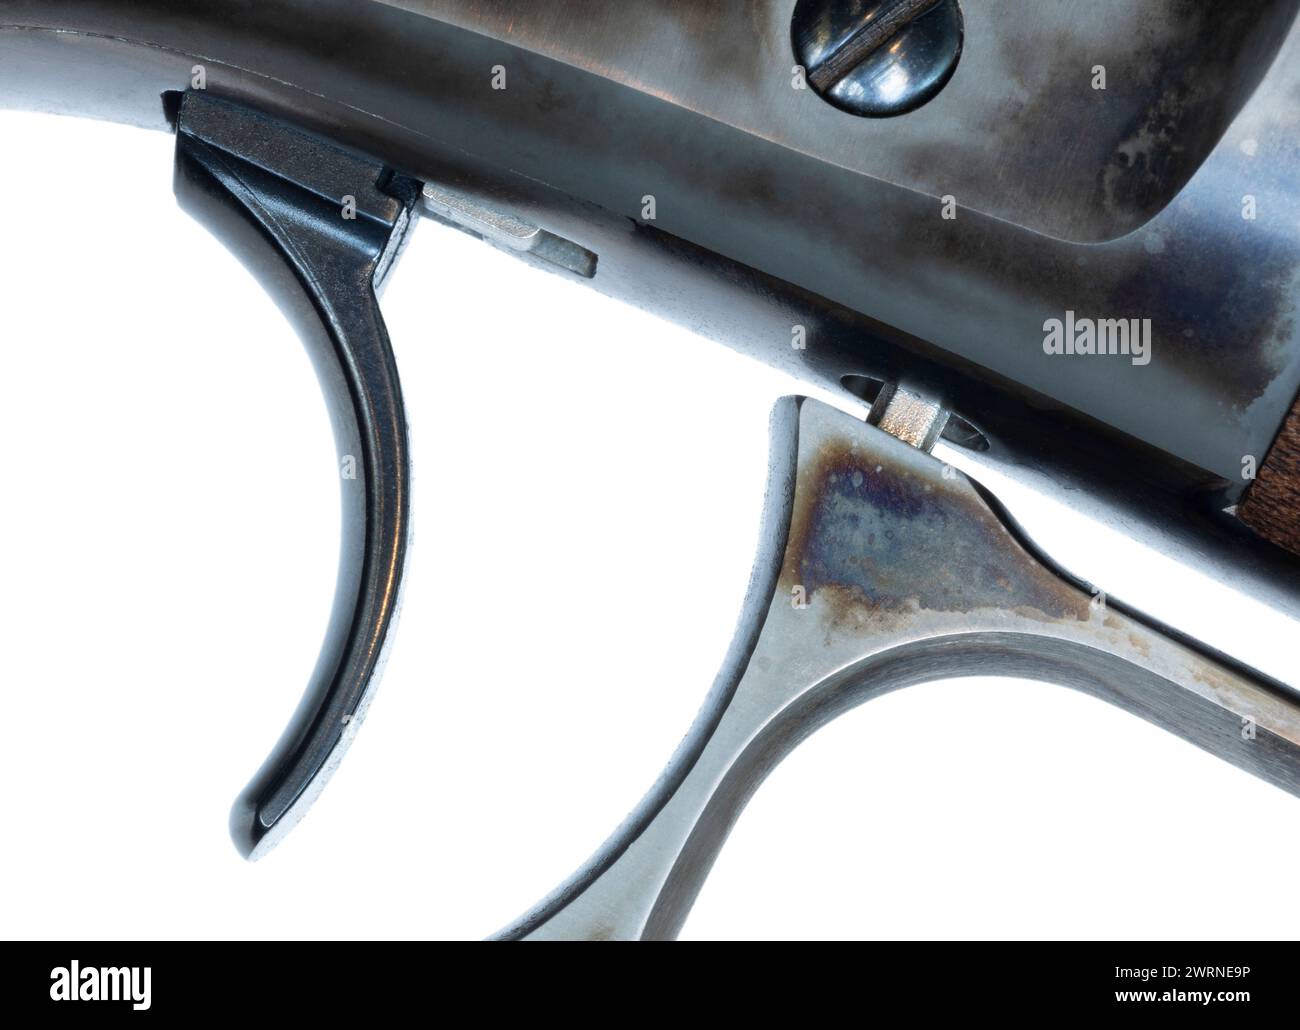 Glatter Auslöser an einem Hebelgewehr mit festem Hebel und isoliertem Hebel auf weißem Hintergrund in einem Studioaufnahme. Stockfoto